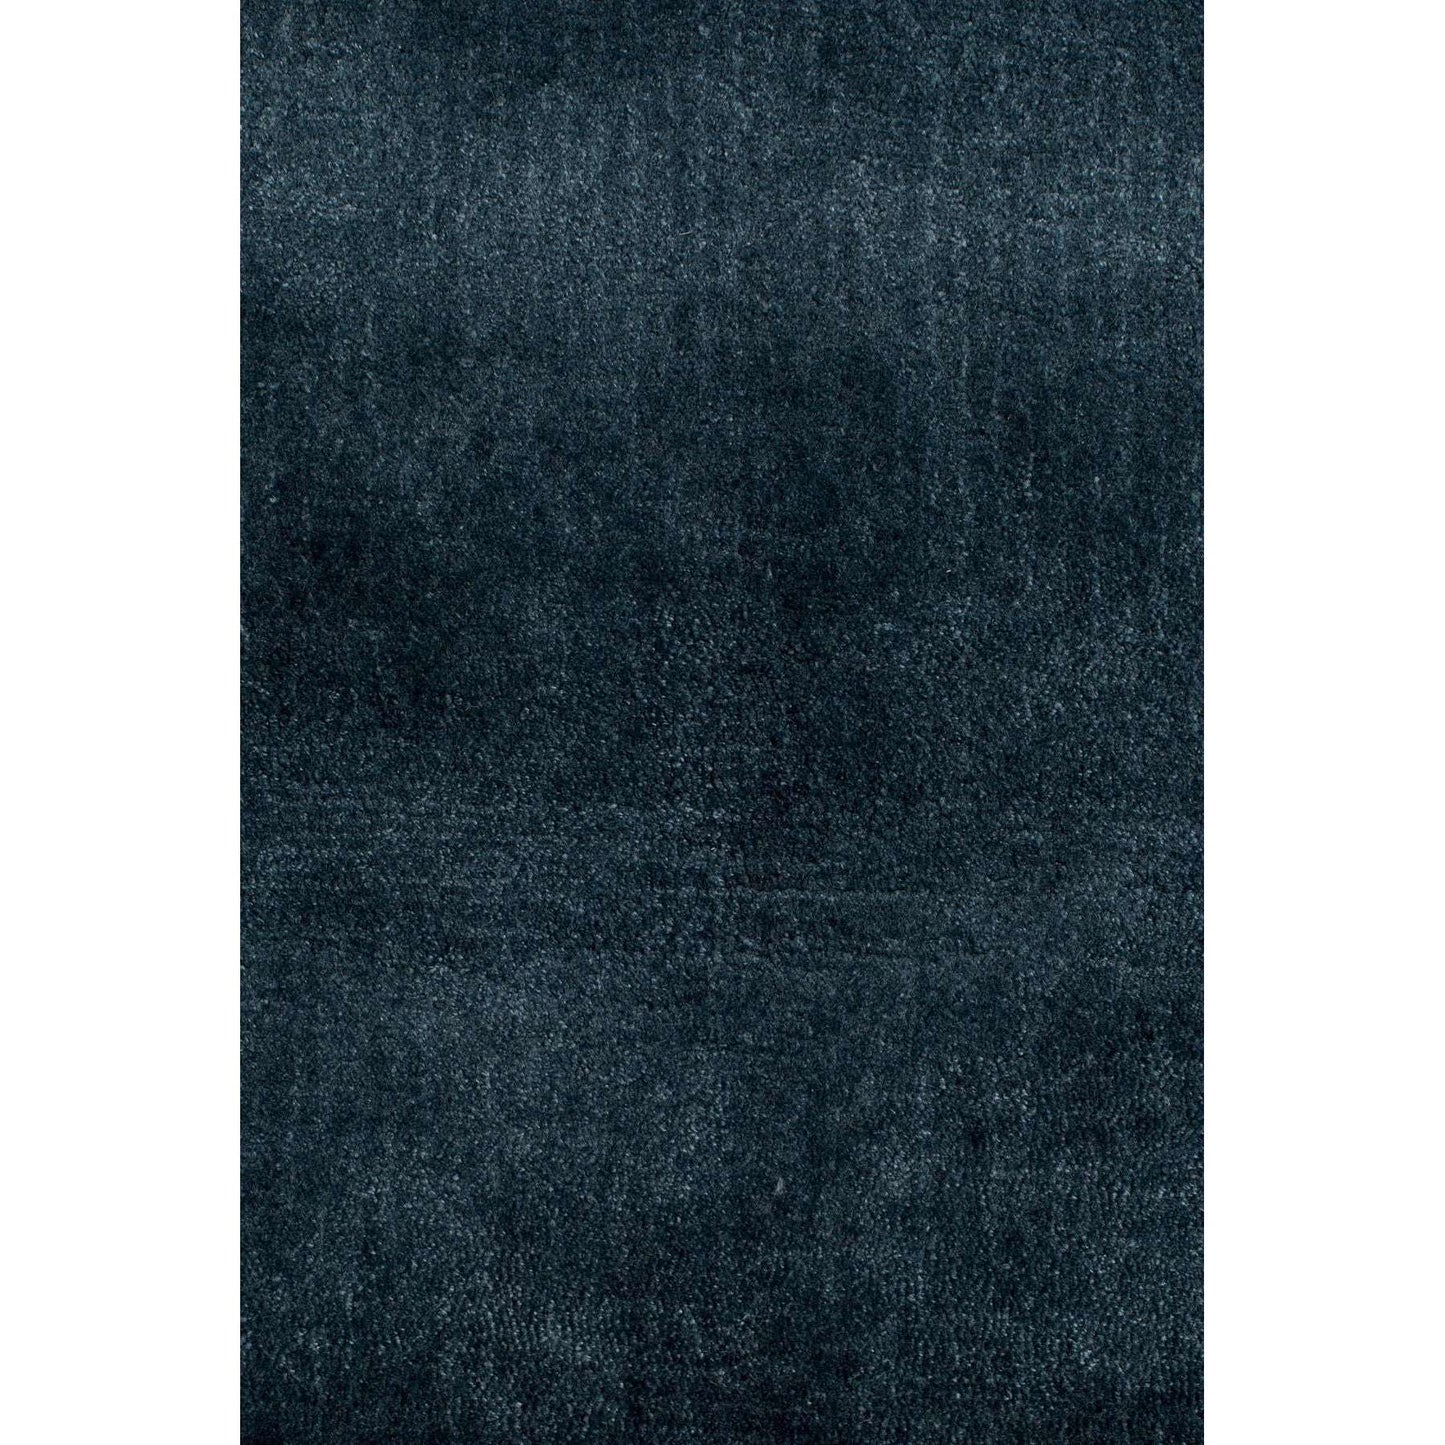 Zuiver vloerkleed blink blauw 240 x 170 x 0,6 cm